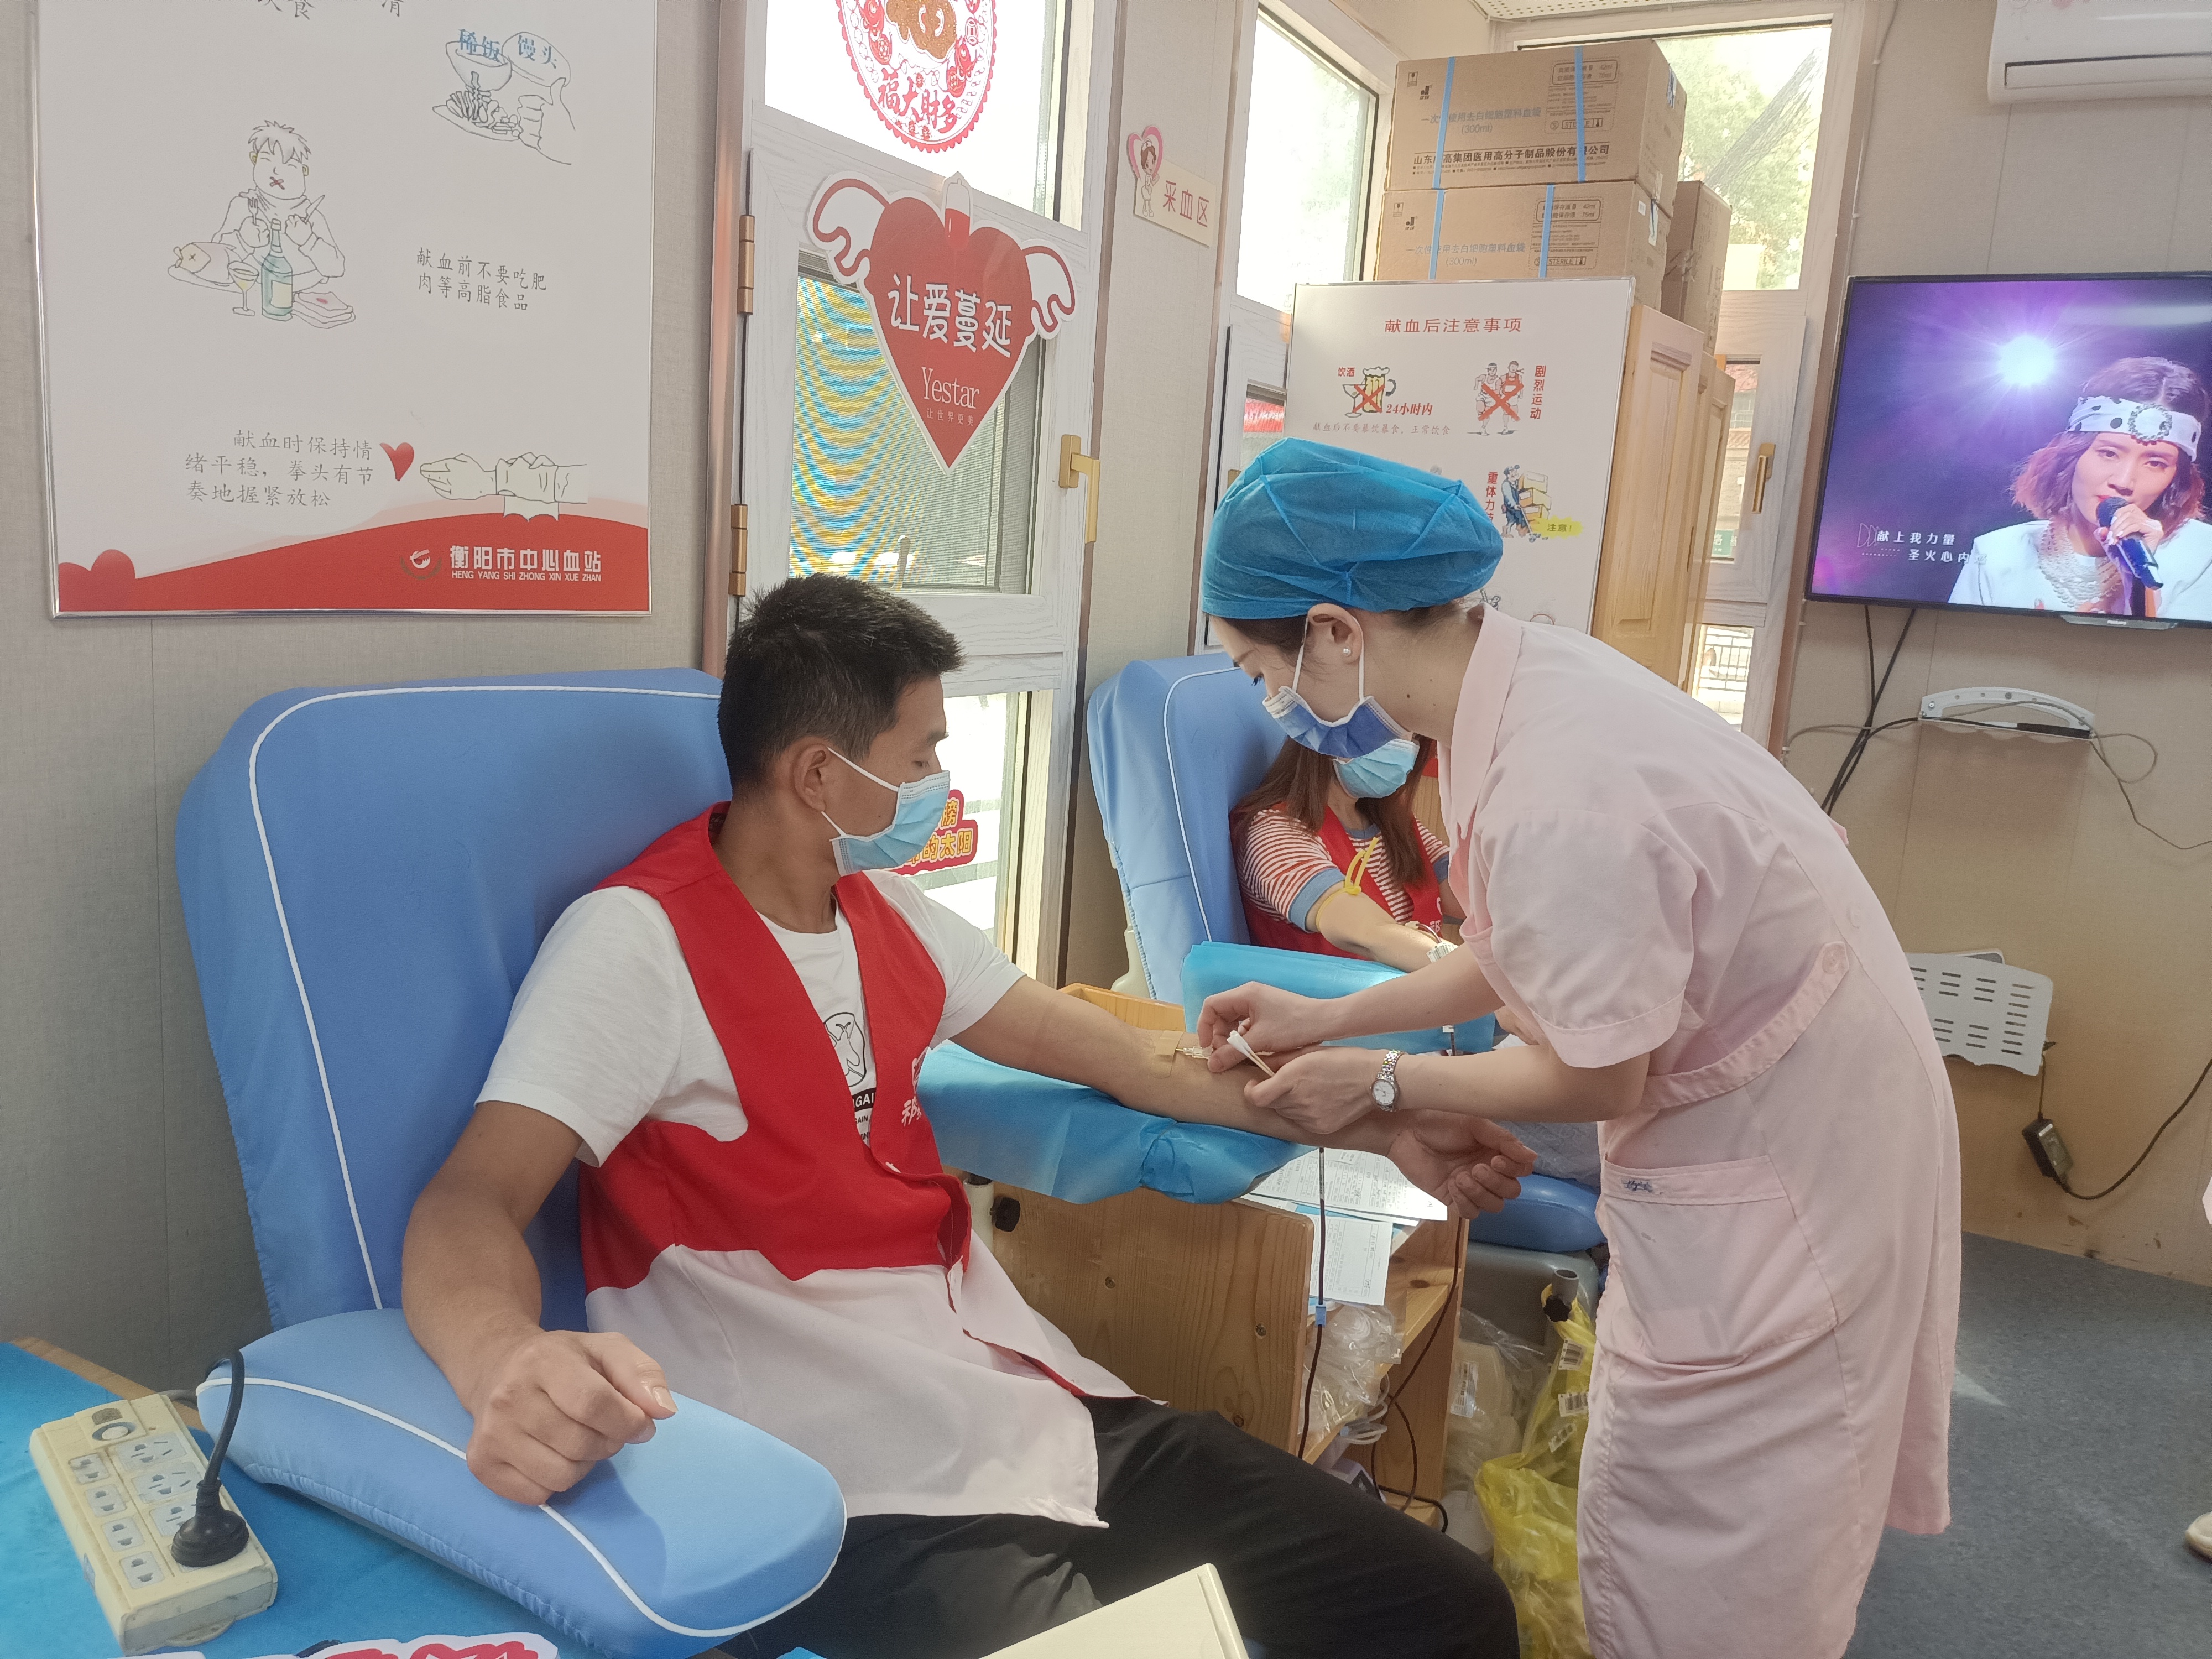 祁东县义工协会志愿者无偿献血十年 累计献血10万毫升